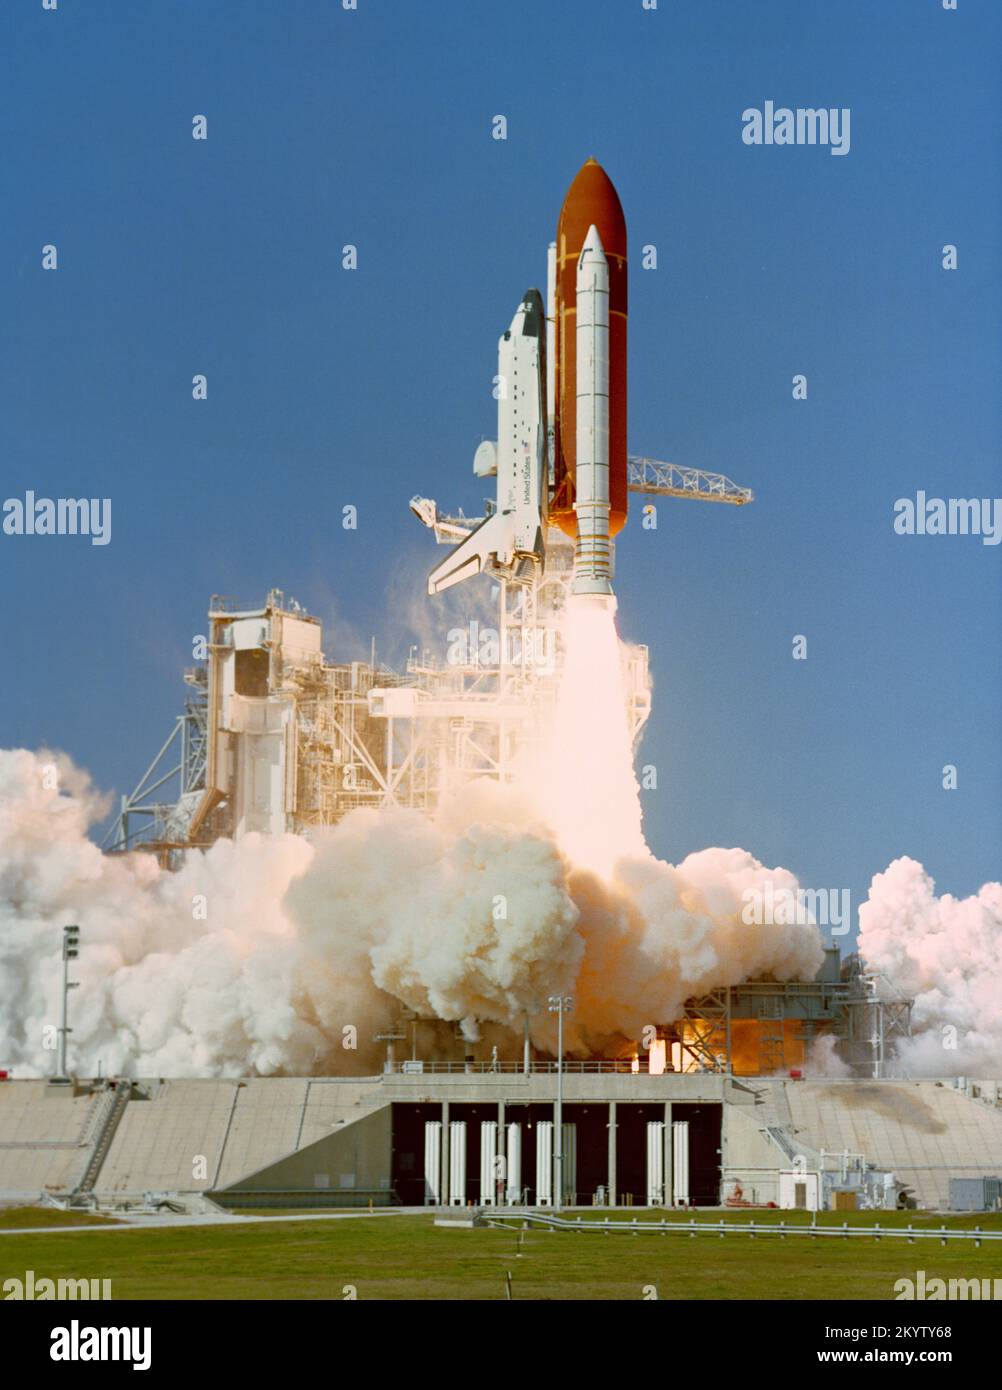 STS-27 STS-27 Atlantis, Orbiter Vehicle (OV) 104, est lancé à partir du KSC Launch Complex (LC) Pad 39B pour une mission dédiée du ministère de la Défense (DOD). La VO-104, qui monte au-dessus du réservoir externe (et), s'élève au-dessus de la plate-forme de lanceur mobile et du plateau de lancement, la tour de lancement étant toujours visible en arrière-plan. Date: 2 décembre 1988 Banque D'Images